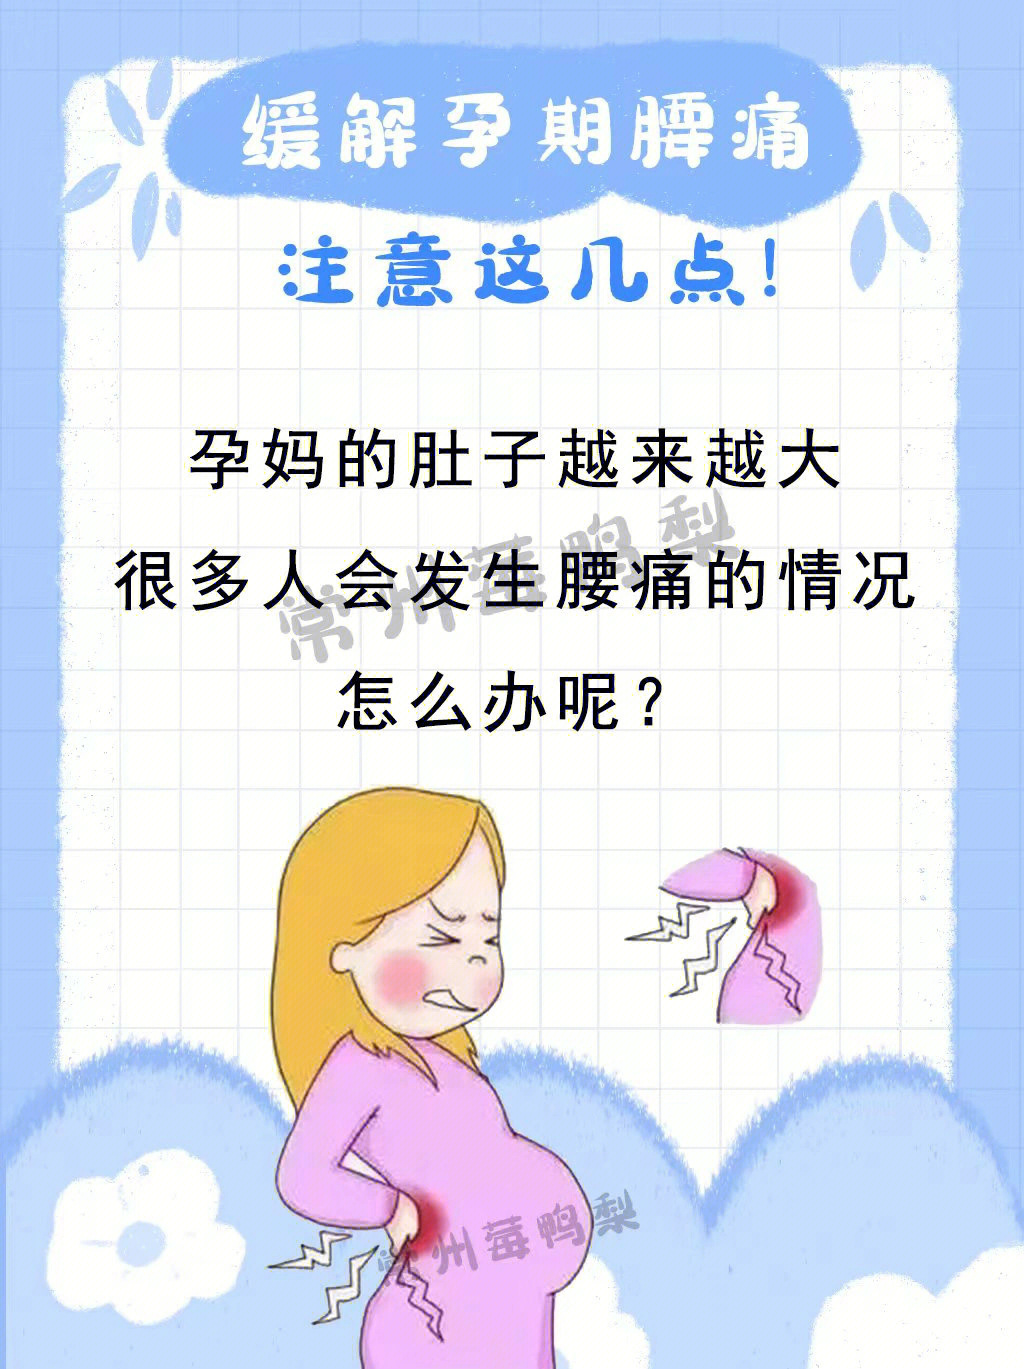 95出现孕妇腰疼的原因主要分为以下几种:1,胎盘,羊水增多,使孕妇